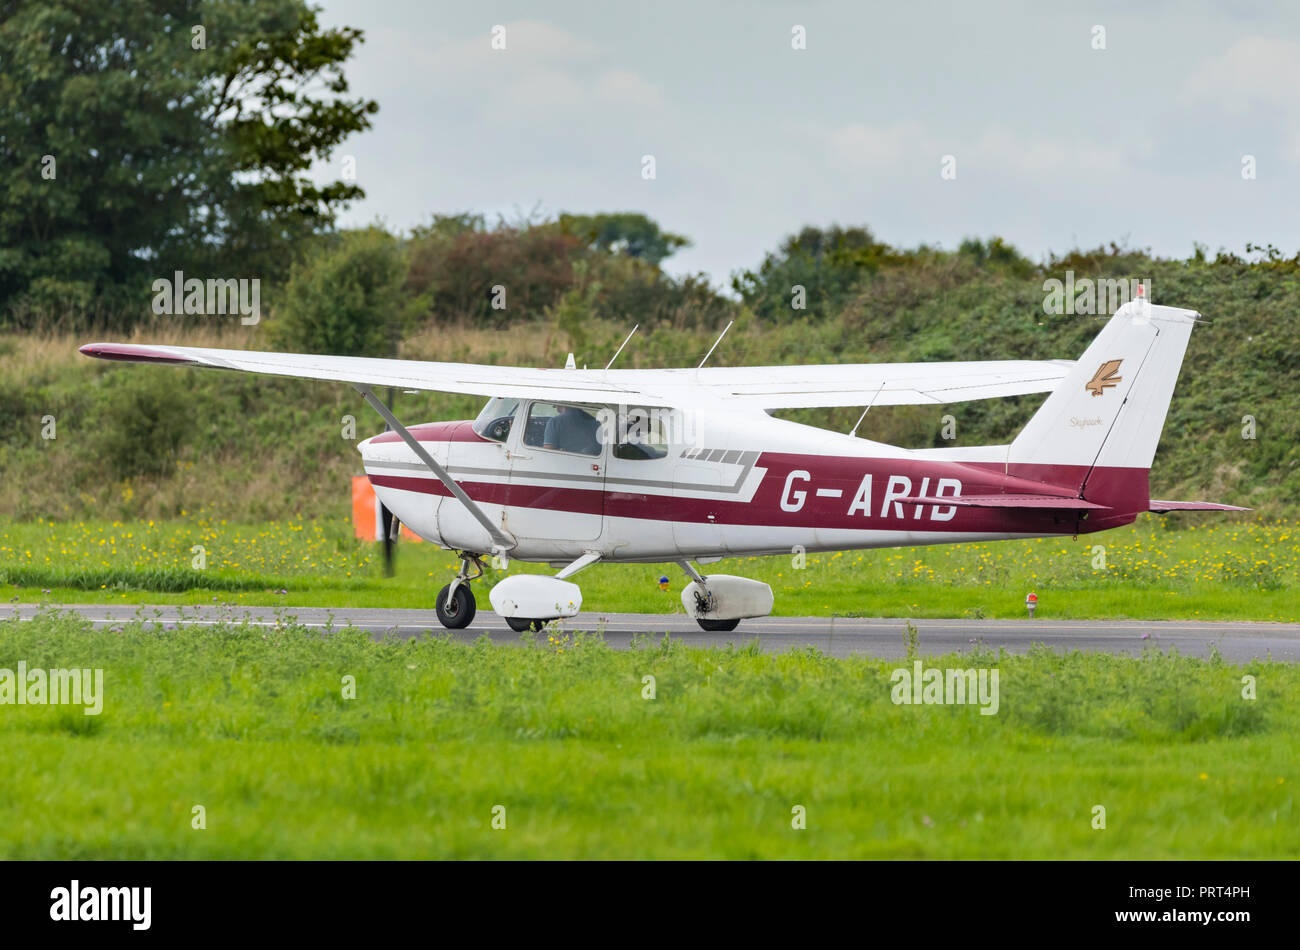 Cessna 172 B kleine Flügel private Flugzeuge, Registrierung G-aride, rollen auf einem taxiway an einem kleinen Flughafen in Großbritannien. Stockfoto